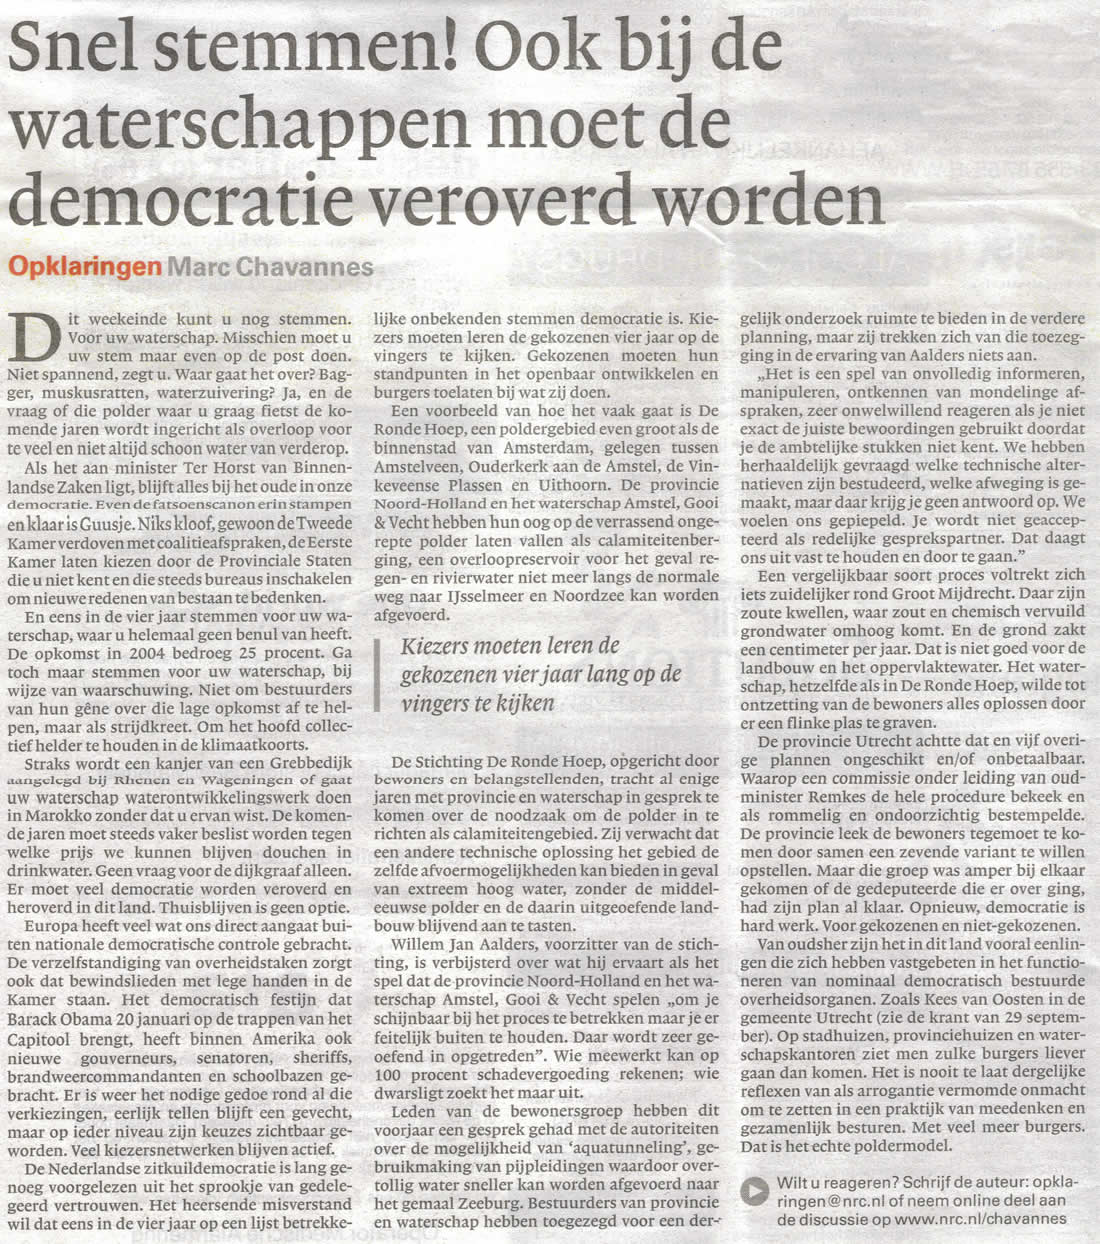 'Snel stemmen" Ook bij de waterschappen moet de democratie veroverd worden' (NRC/Handelsblad).